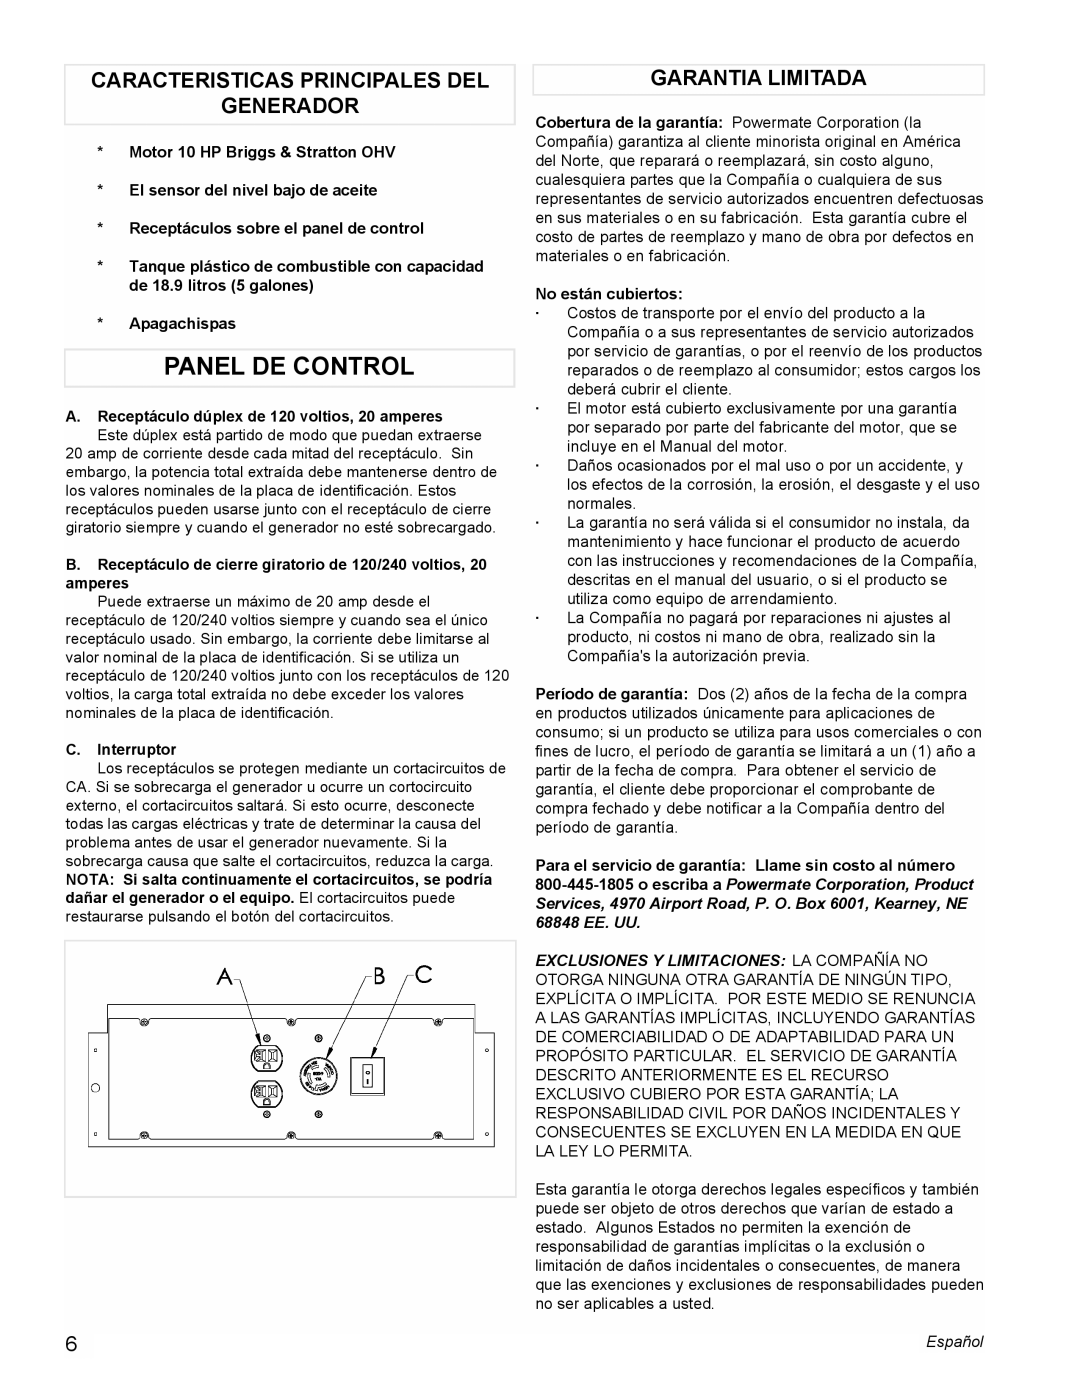 Powermate PMC545004 manual Panel De Control, Caracteristicas Principales Del Generador, Garantia Limitada 